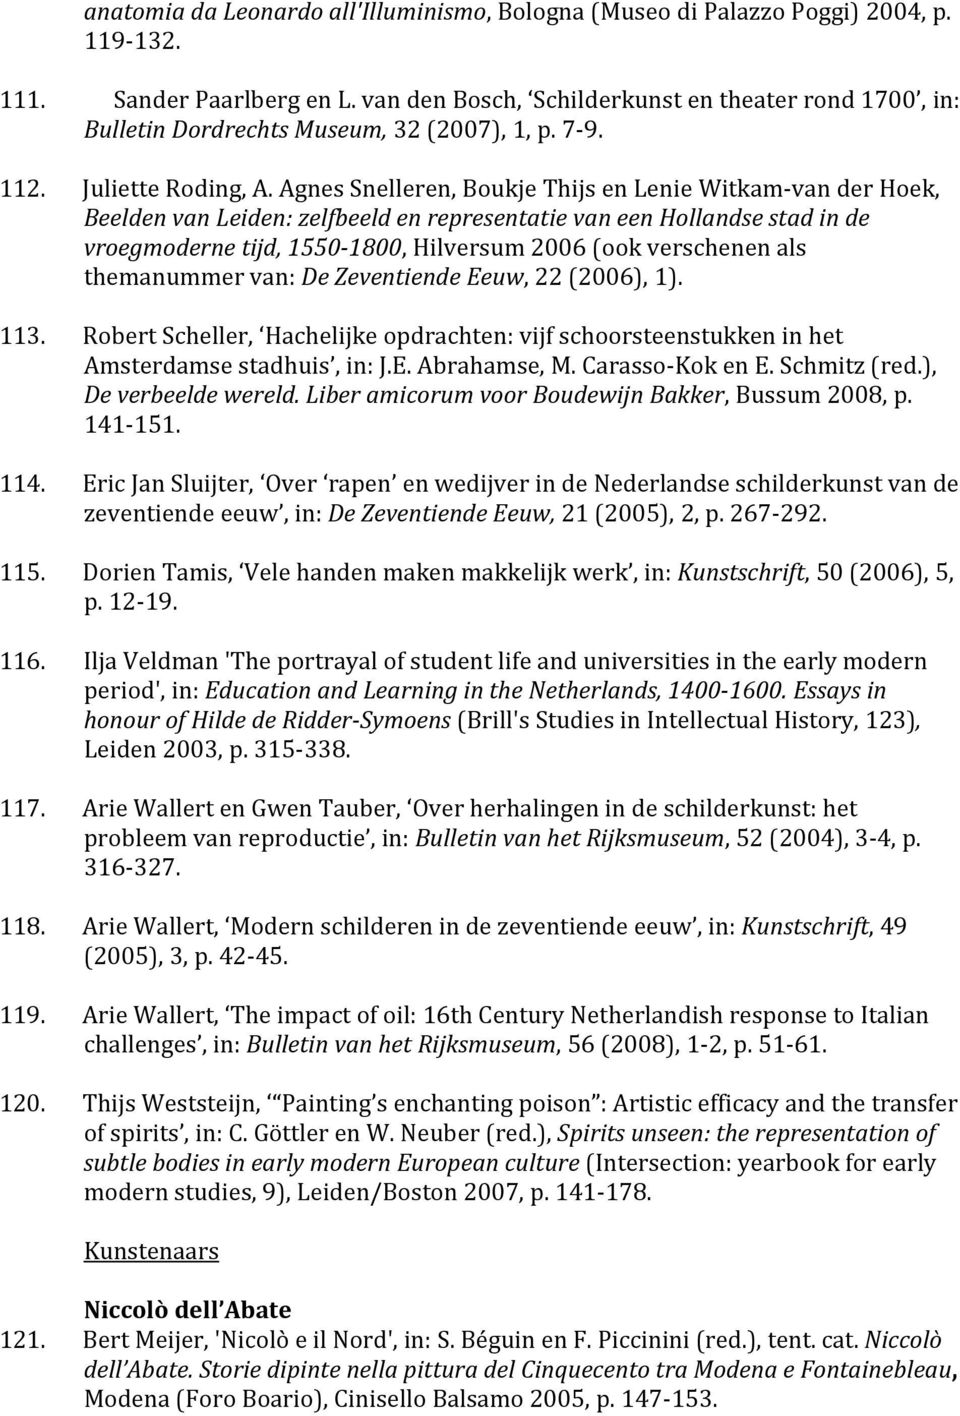 Agnes Snelleren, Boukje Thijs en Lenie Witkam-van der Hoek, Beelden van Leiden: zelfbeeld en representatie van een Hollandse stad in de vroegmoderne tijd, 1550-1800, Hilversum 2006 (ook verschenen